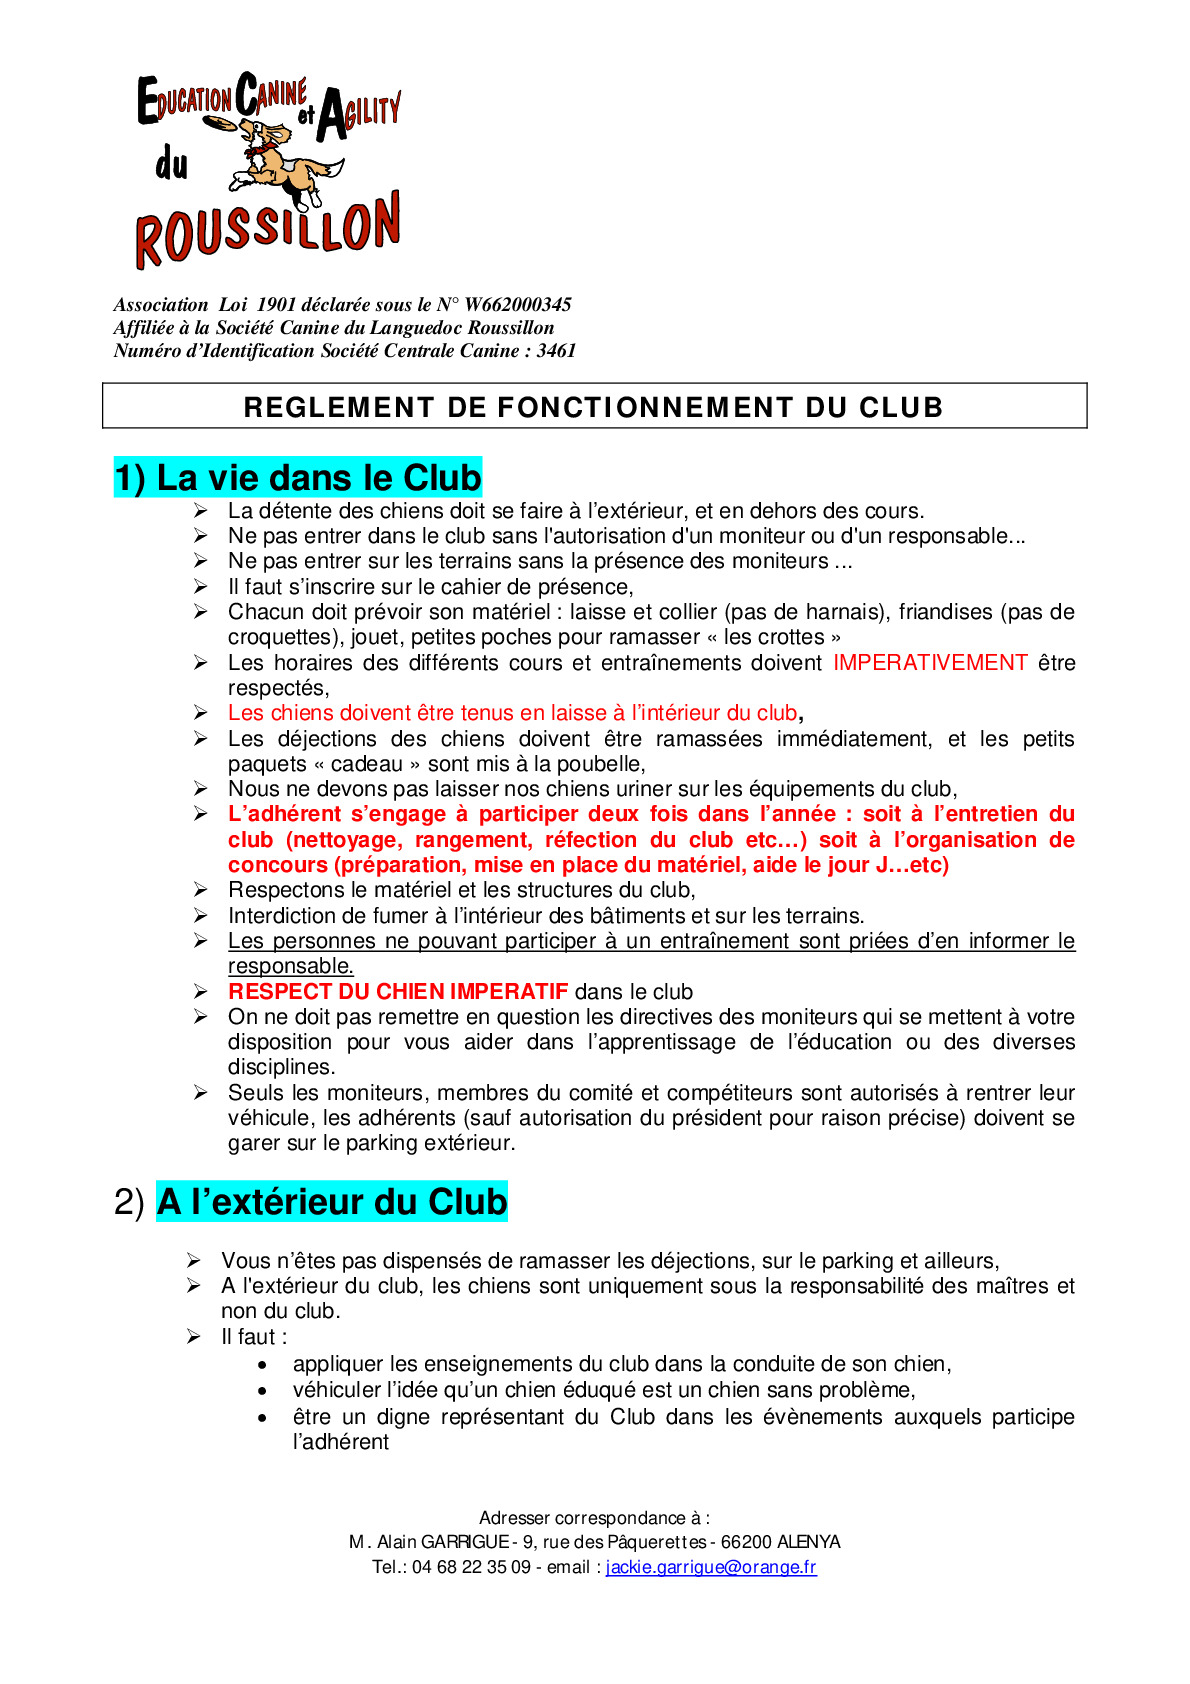 ecar_reglement_de_fonctionnement_du_club_pour_affichage.pdf